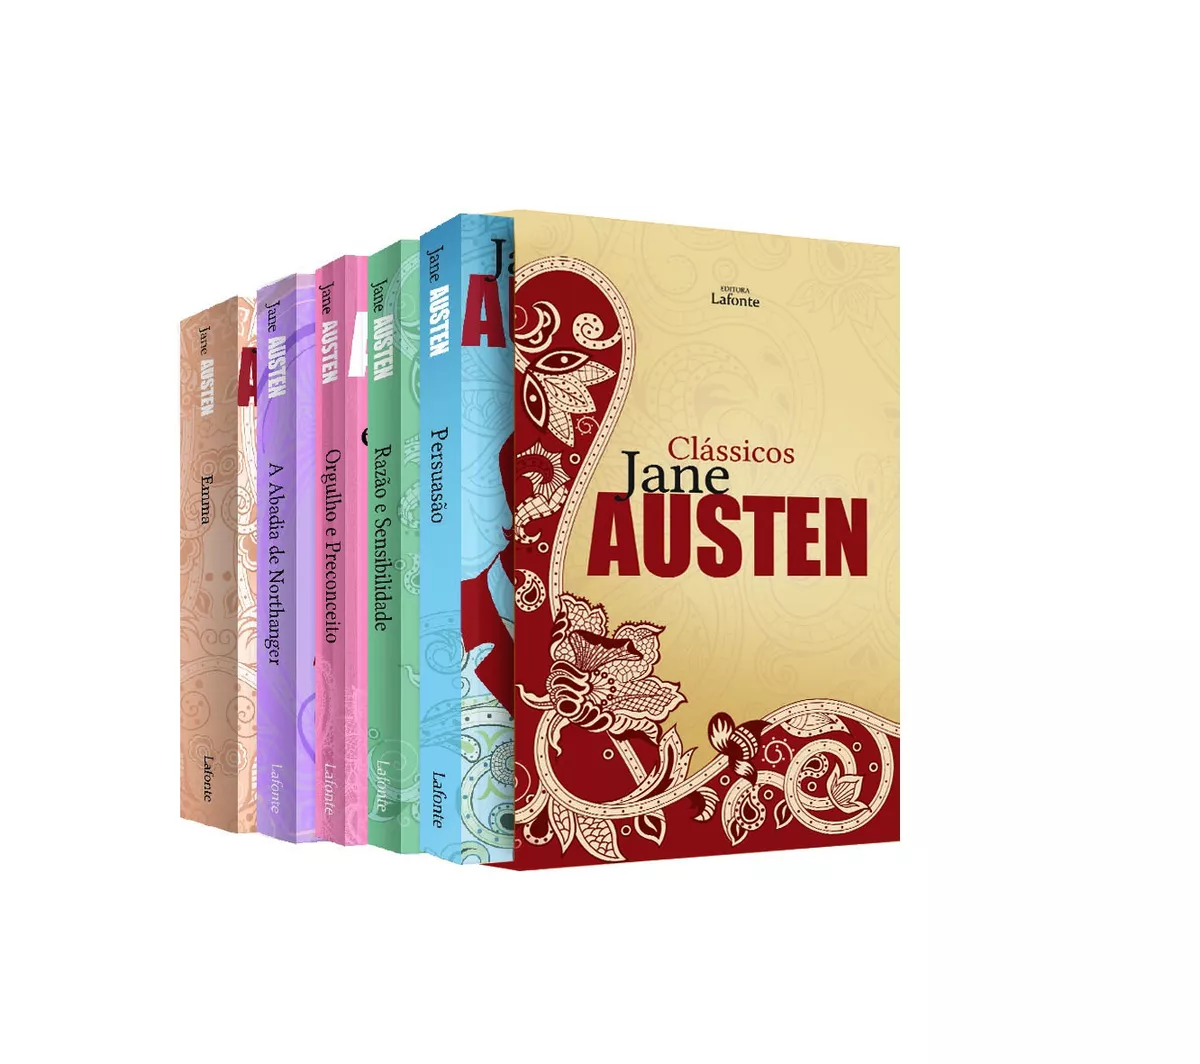 Box Clássicos Jane Austen - Caixa 05 Volumes, De Austen, Jane. Série Coleção Jane Austen Editora Lafonte Ltda, Capa Dura Em Português, 2018